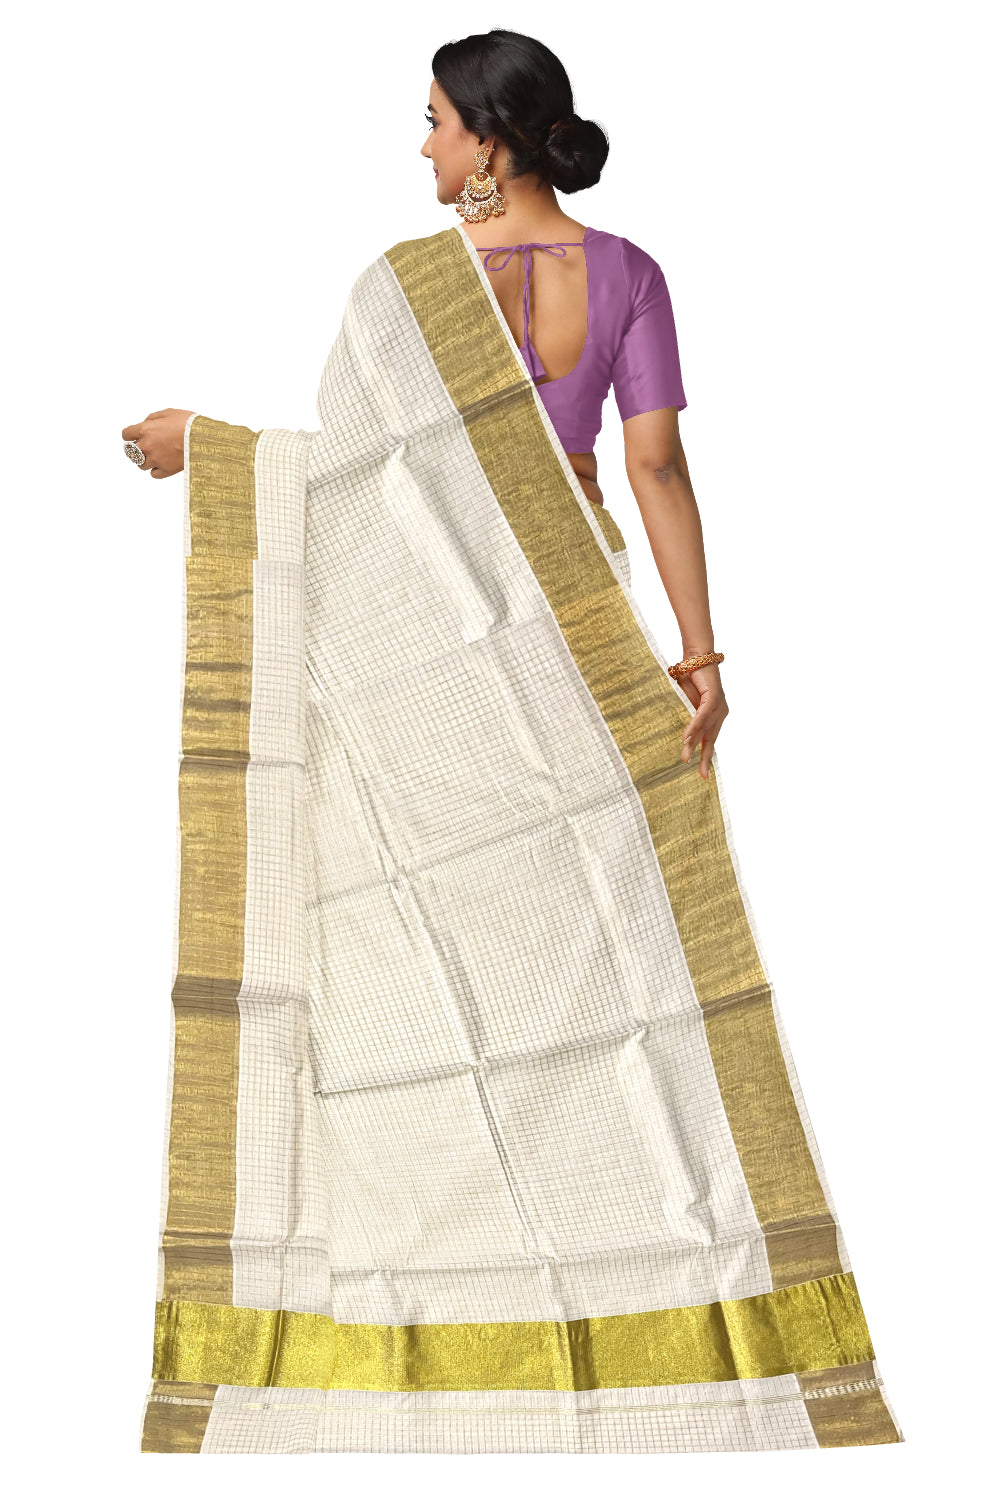 Kerala Cotton Kasavu Check Design Saree with 5x4 Border